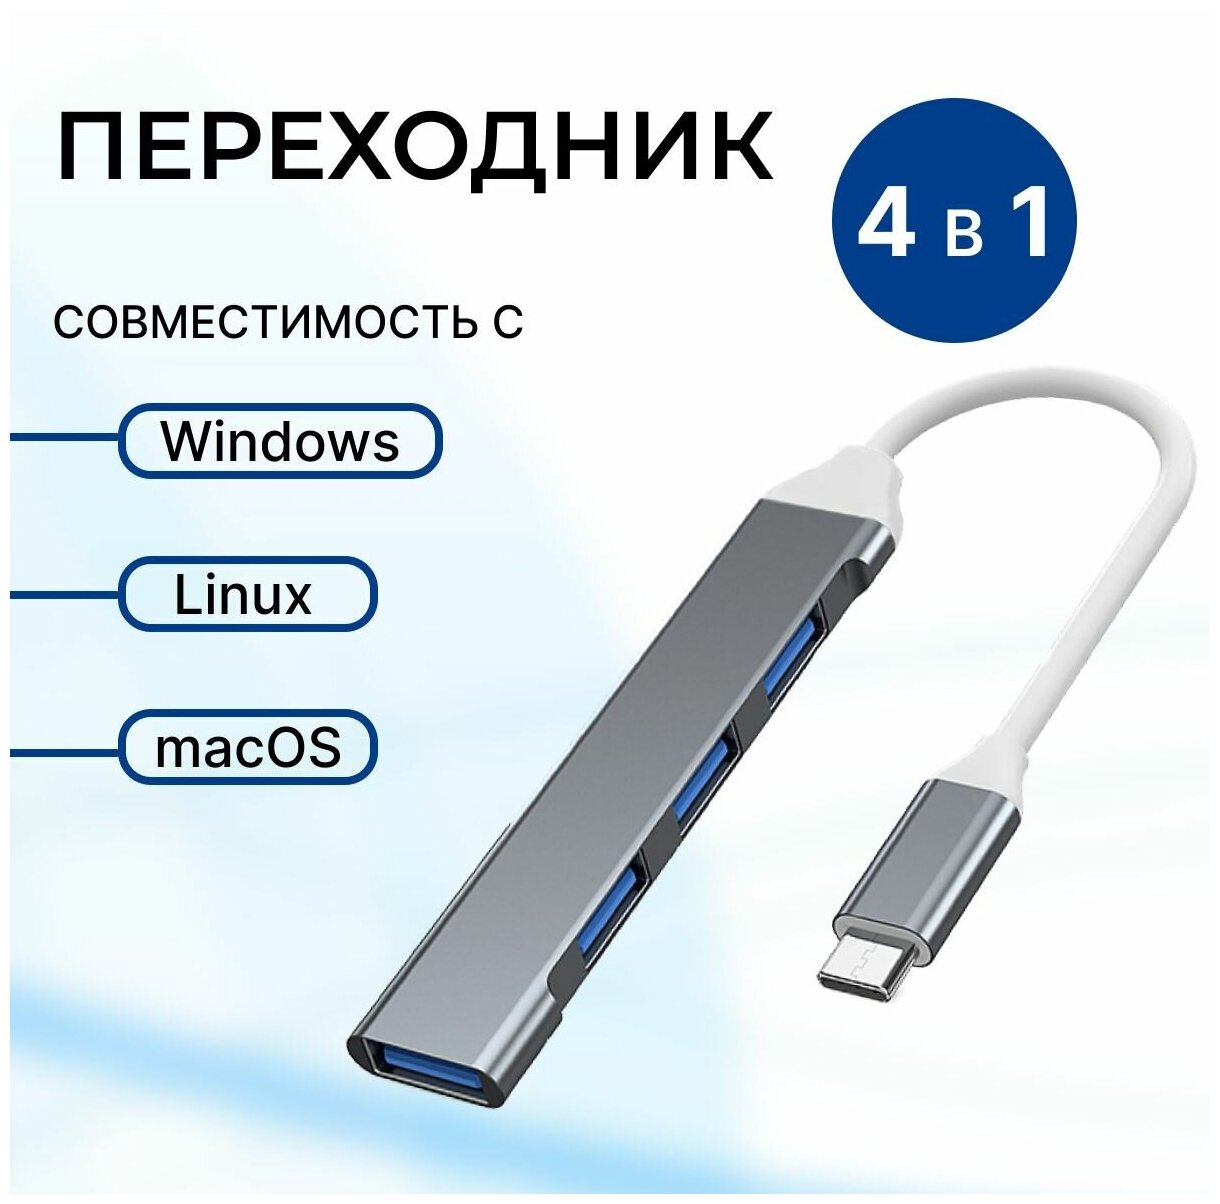 USB Hub 3.0 - Type C концентратор на 4 порта / USB 3.0 / высокоскоростной USB хаб для macbook / hub для apple